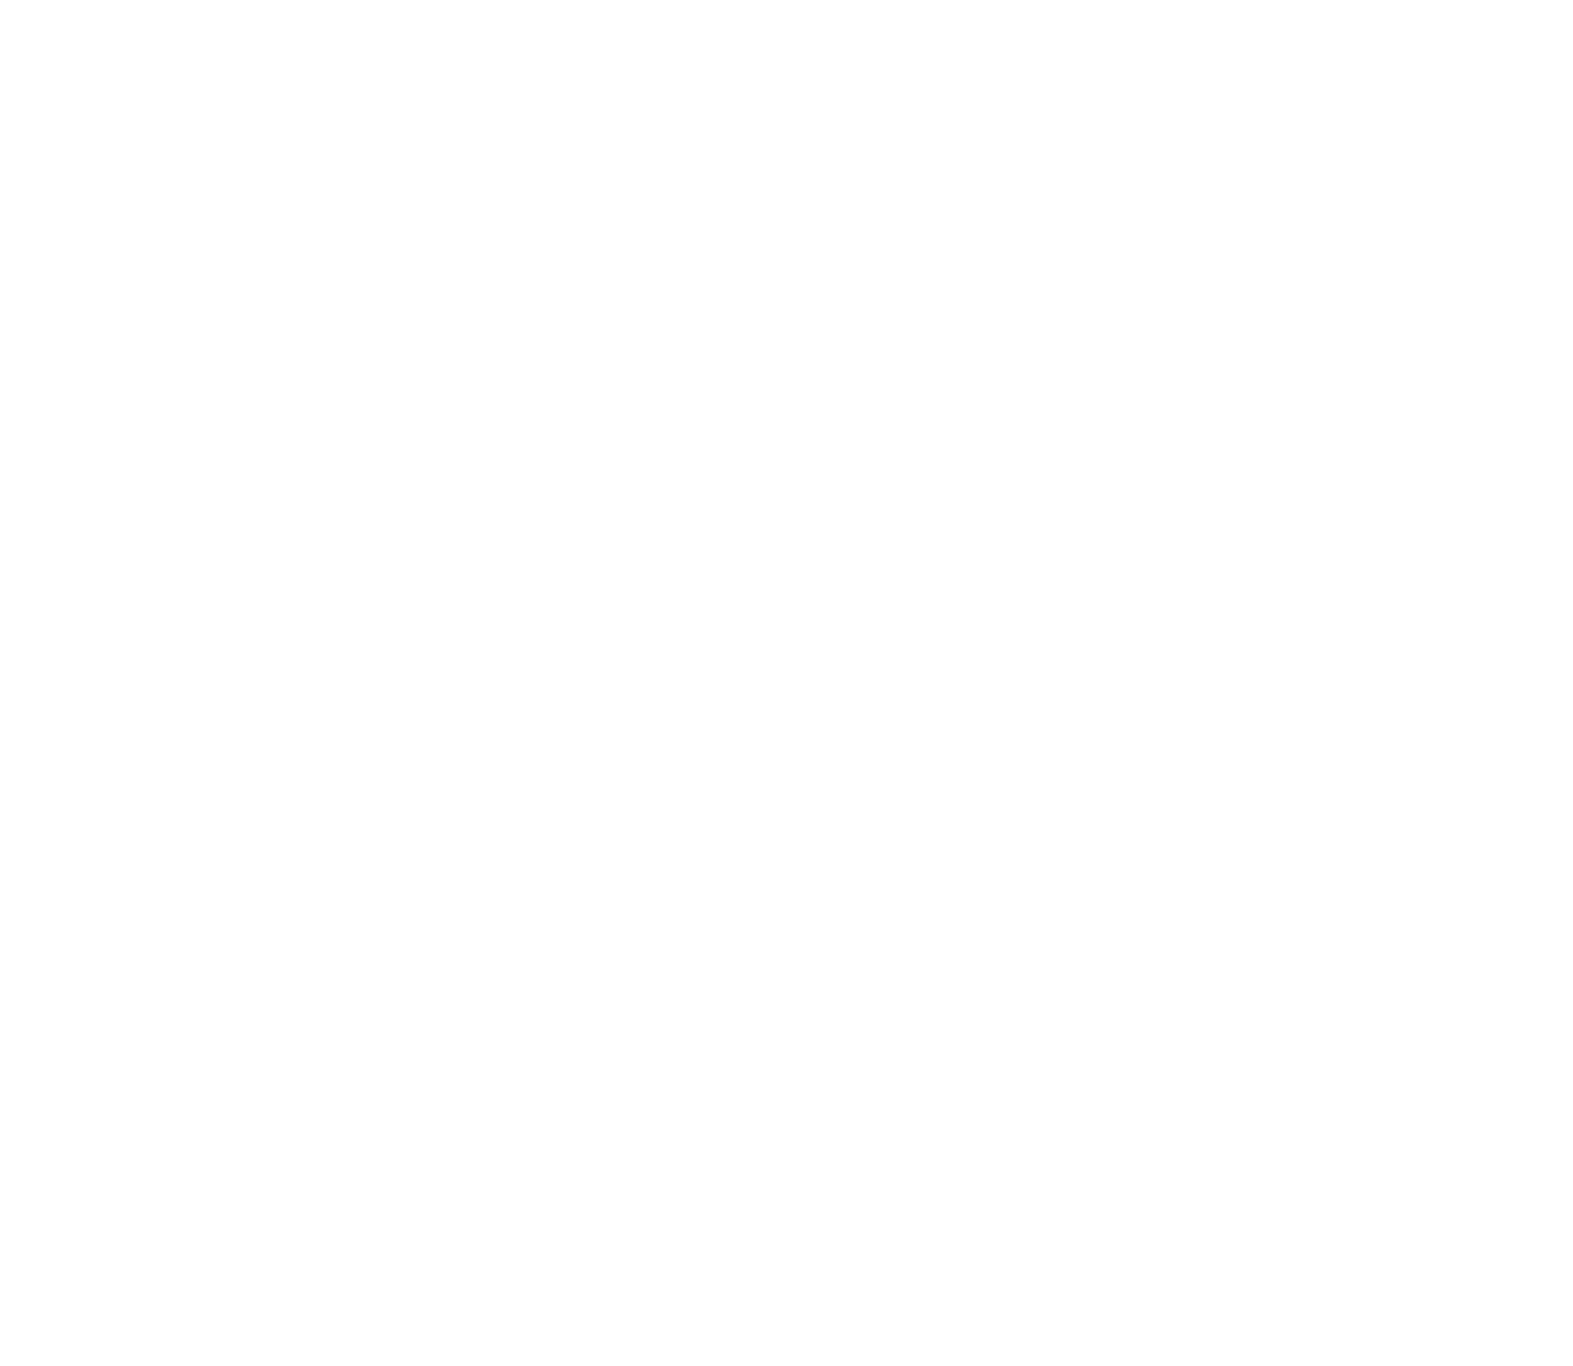 Everest Group logo for dark backgrounds (transparent PNG)